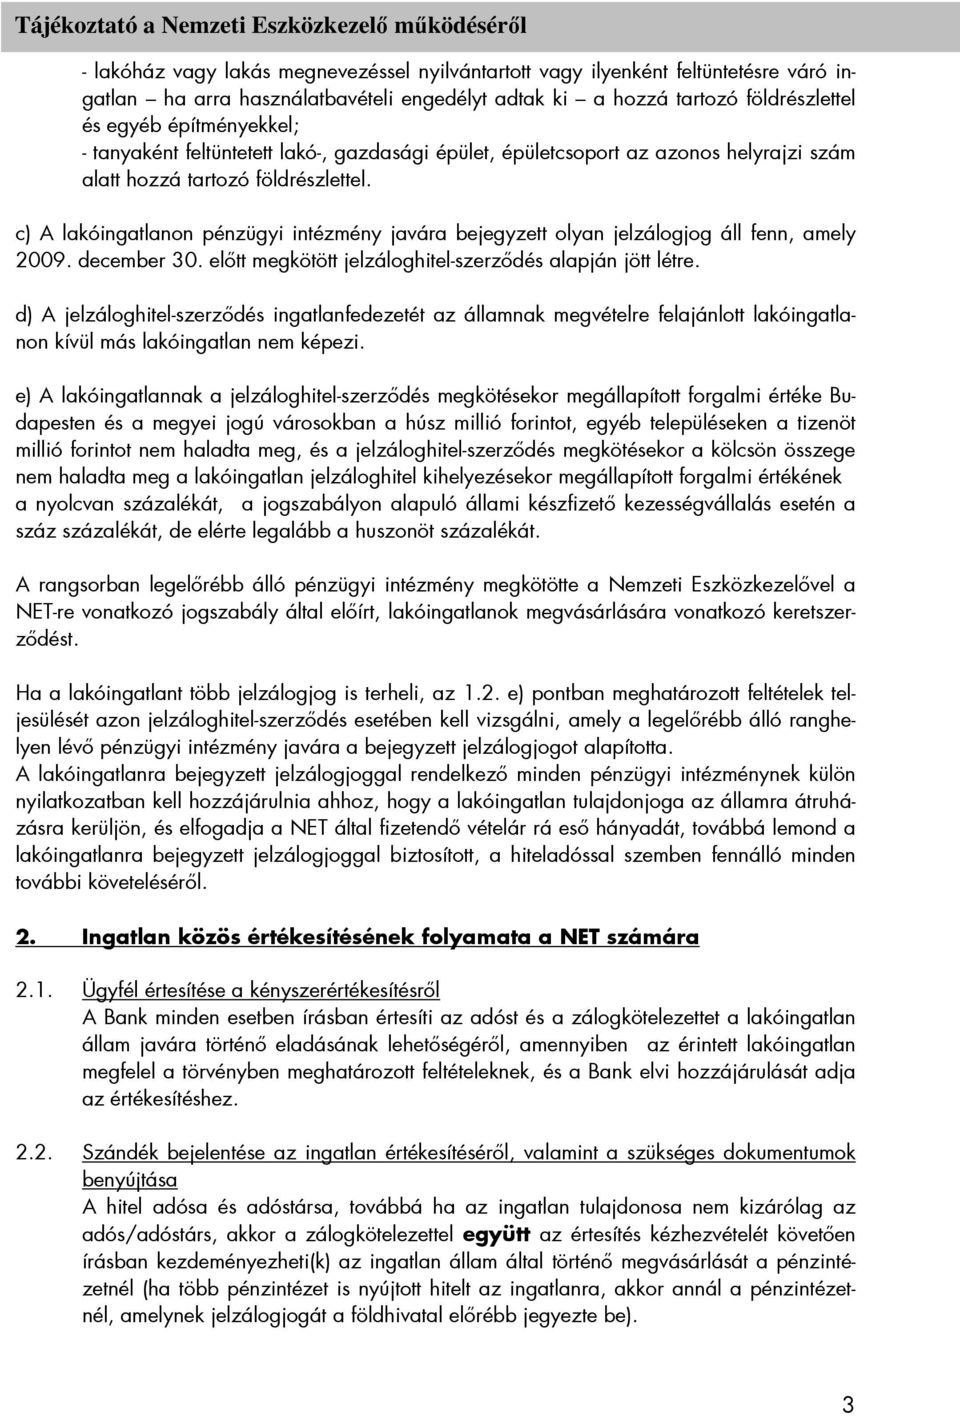 c) A lakóingatlanon pénzügyi intézmény javára bejegyzett olyan jelzálogjog áll fenn, amely 2009. december 30. elıtt megkötött jelzáloghitel-szerzıdés alapján jött létre.